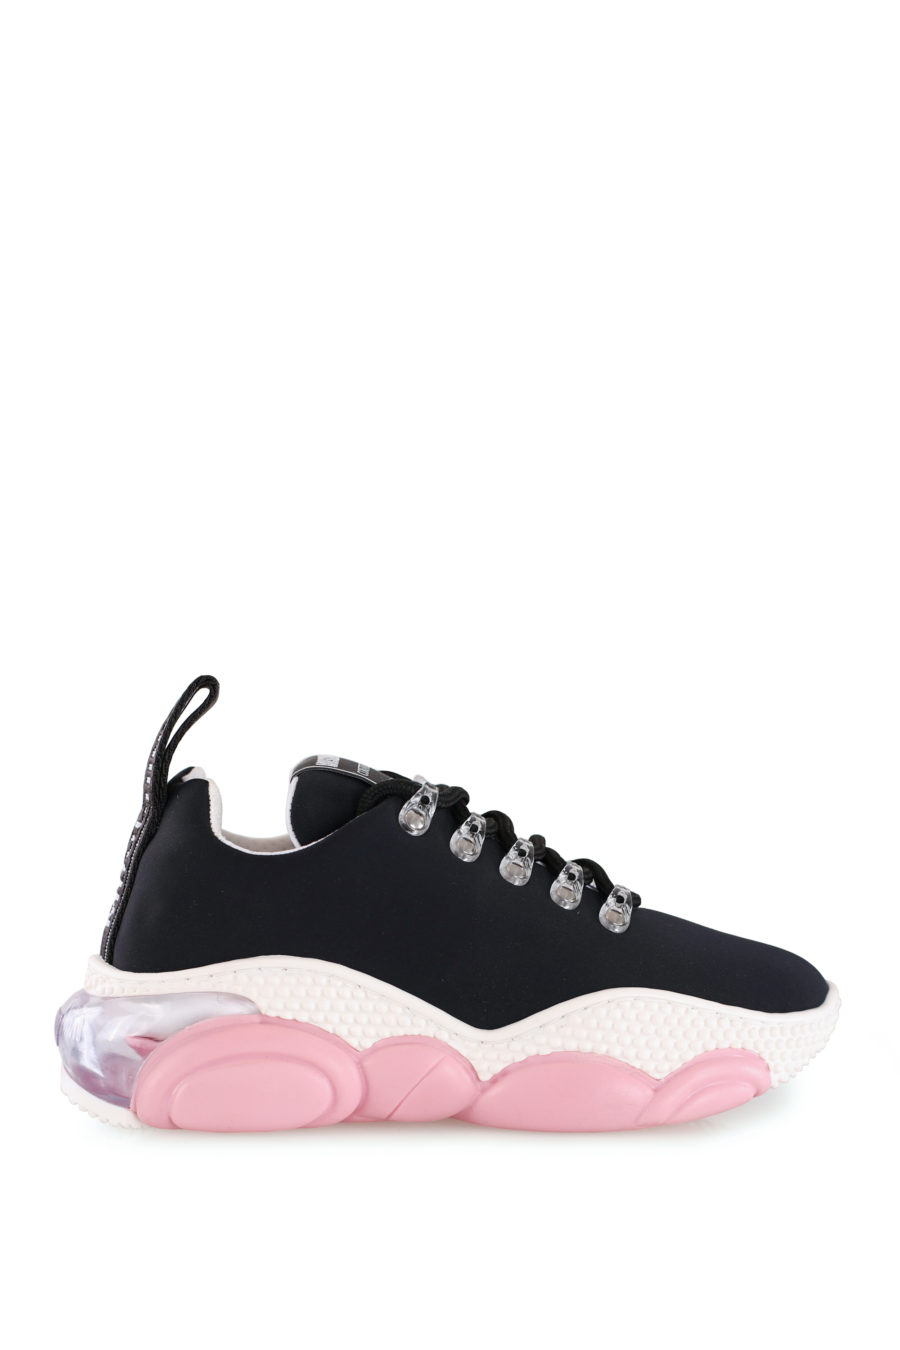 Zapatillas negras con suela color rosa - IMG 8130 copia